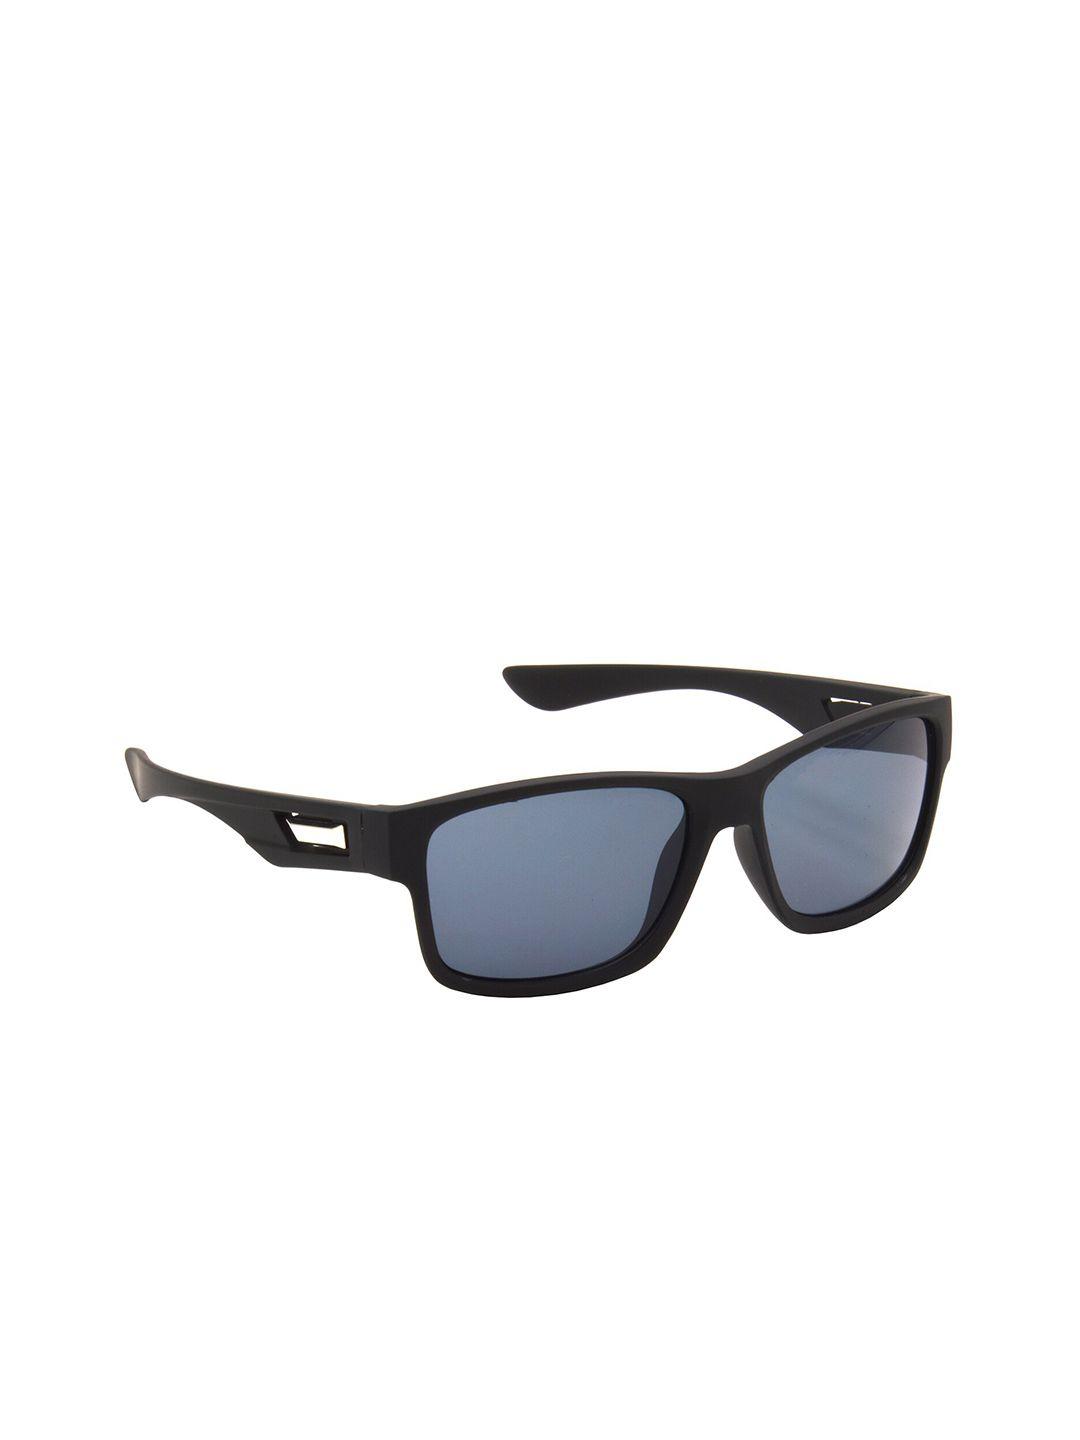 hrinkar unisex wayfarer sunglasses with uv protected lens hrs488